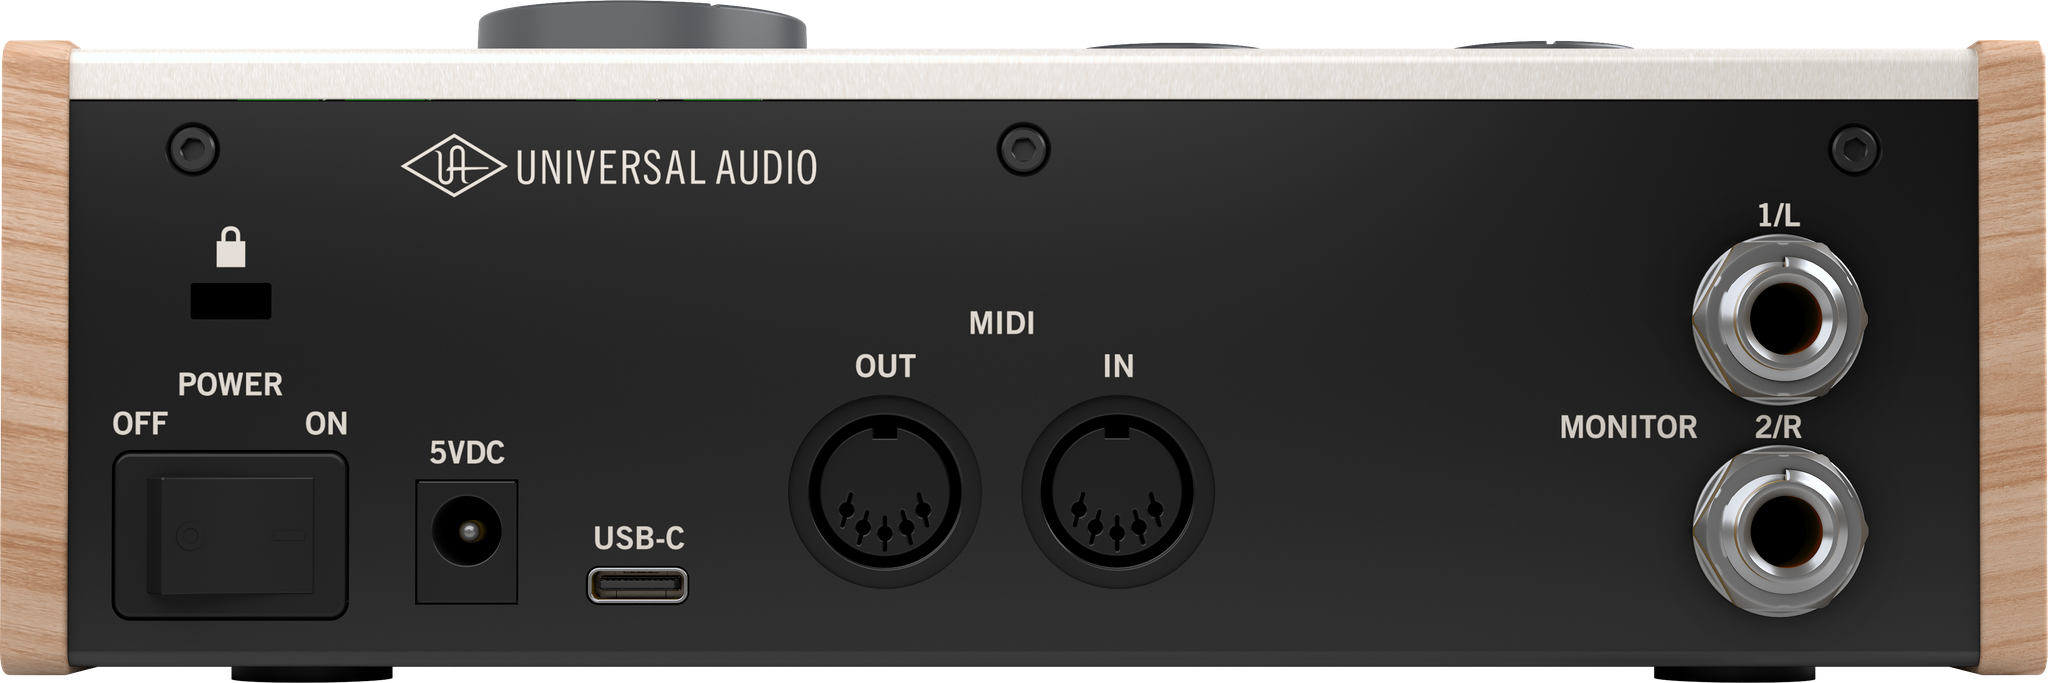 Audio volt 2. Universal Audio Volt 276. Universal Audio Volt 2. Universal Audio Volt 176. UAD Volt 276.